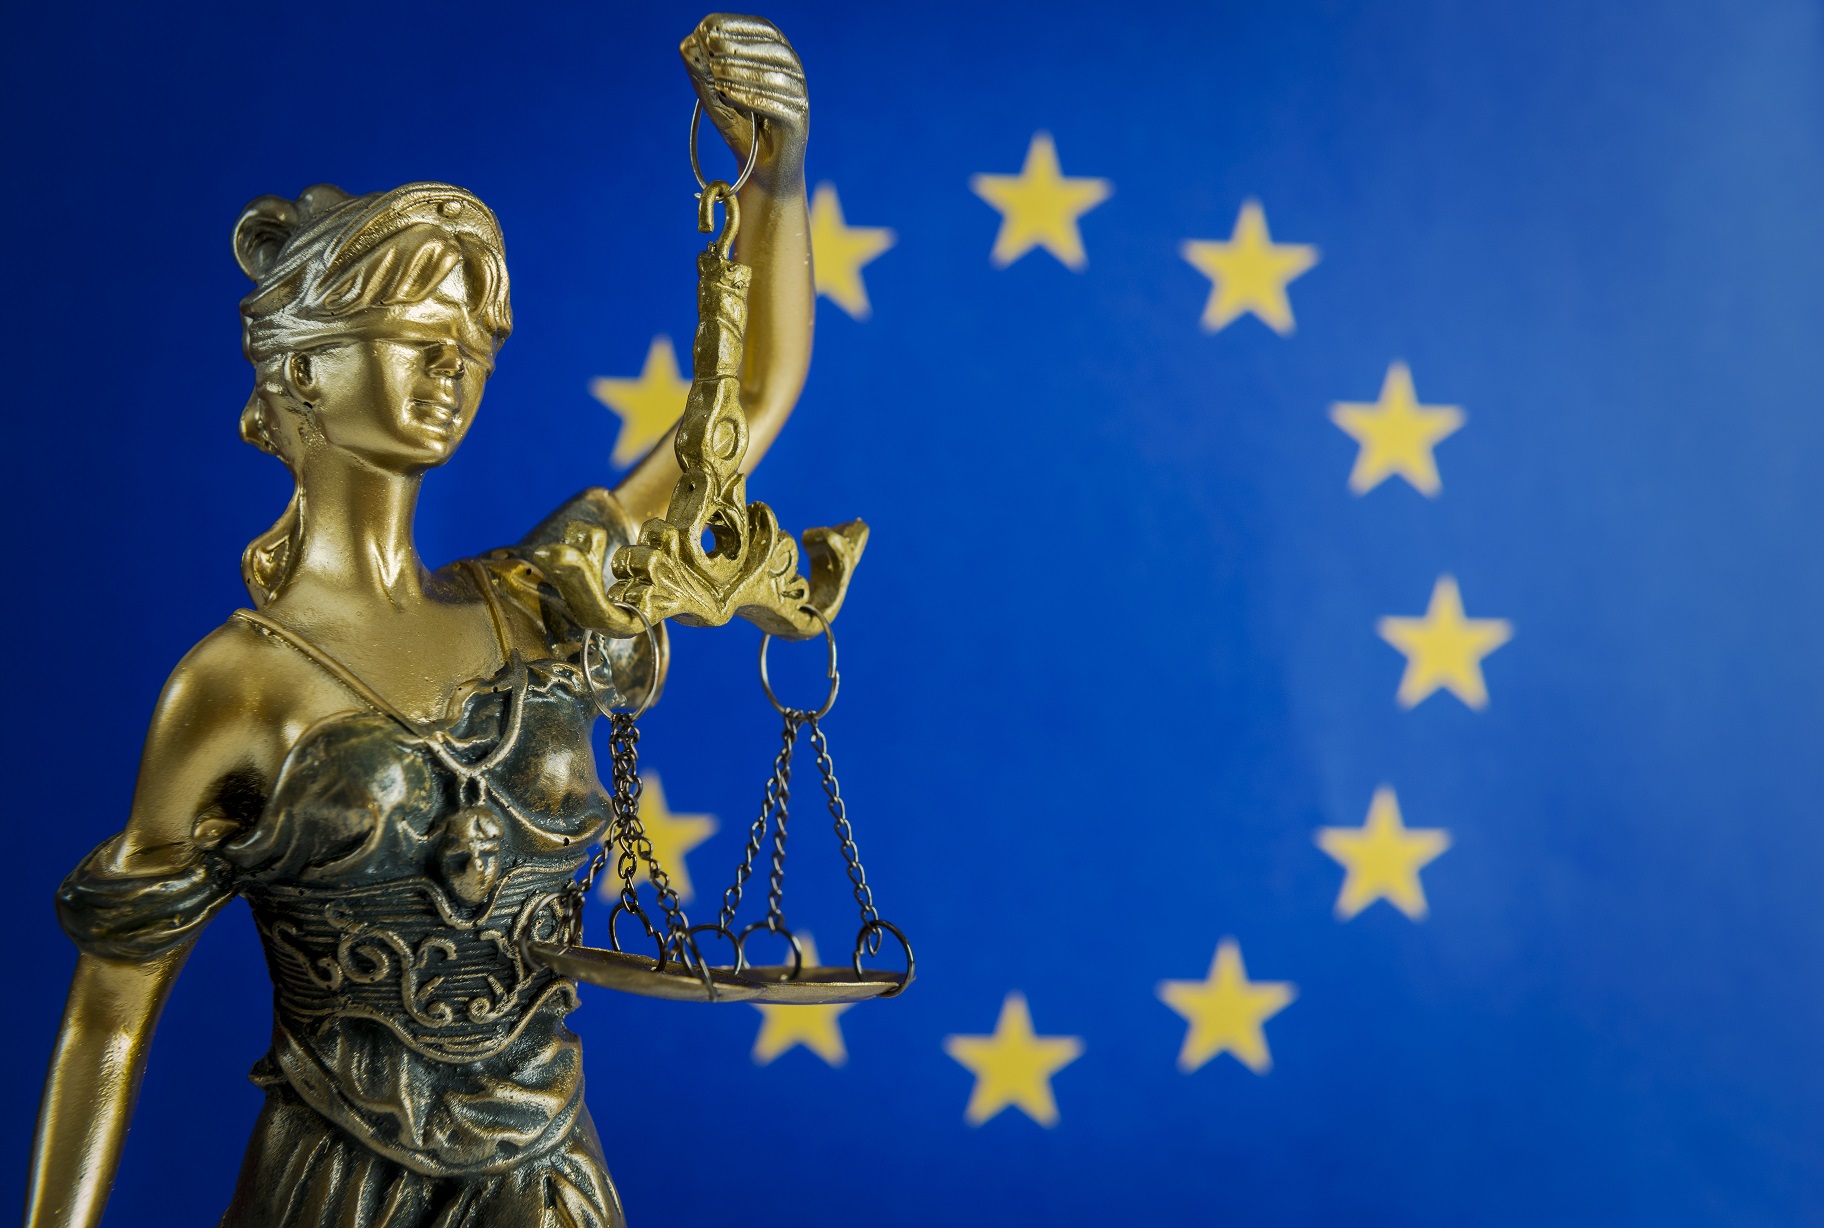 European justice